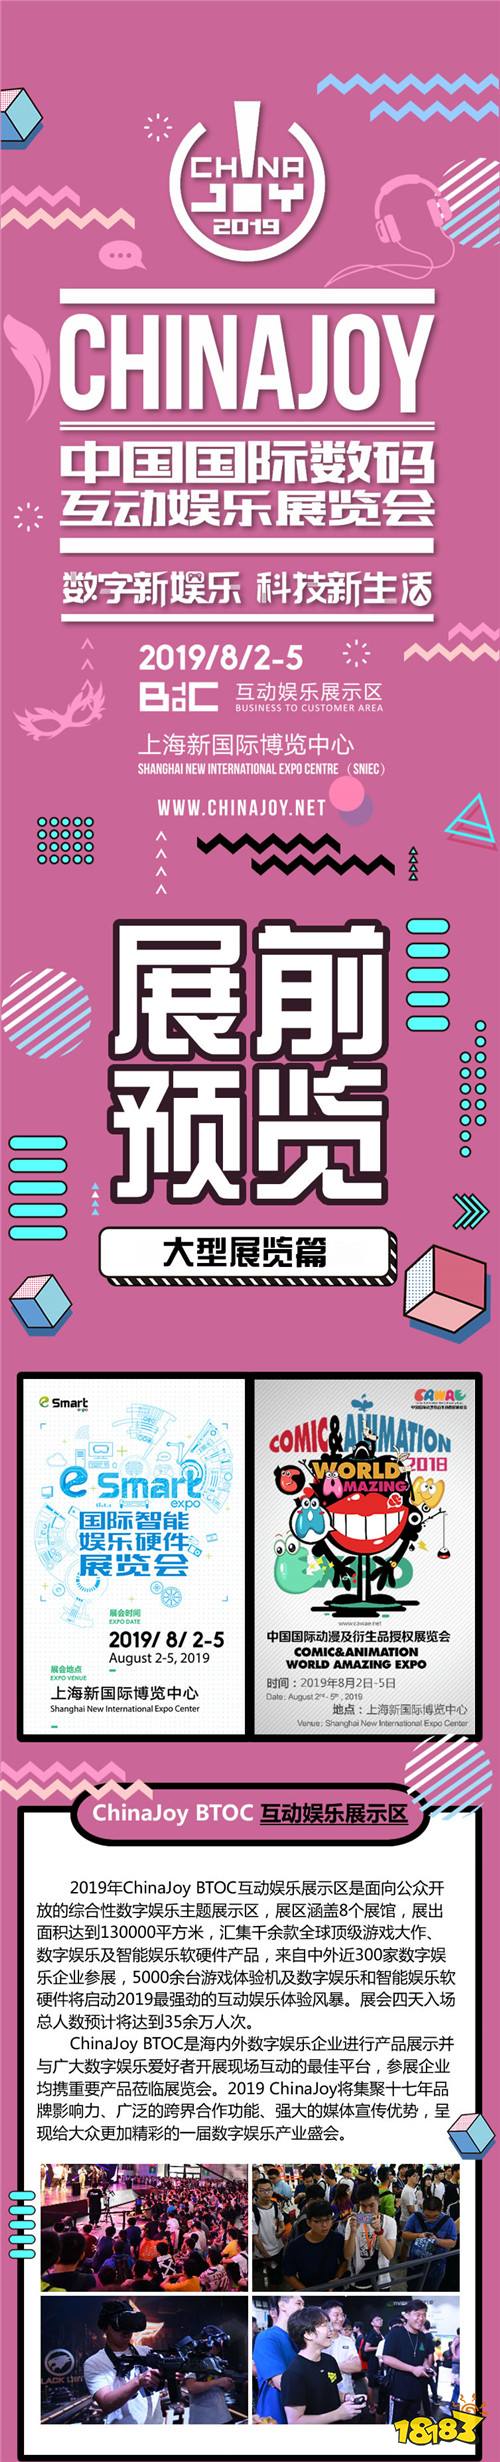 2019年第十七届ChinaJoy展前预览(大型展览篇)正式发布!